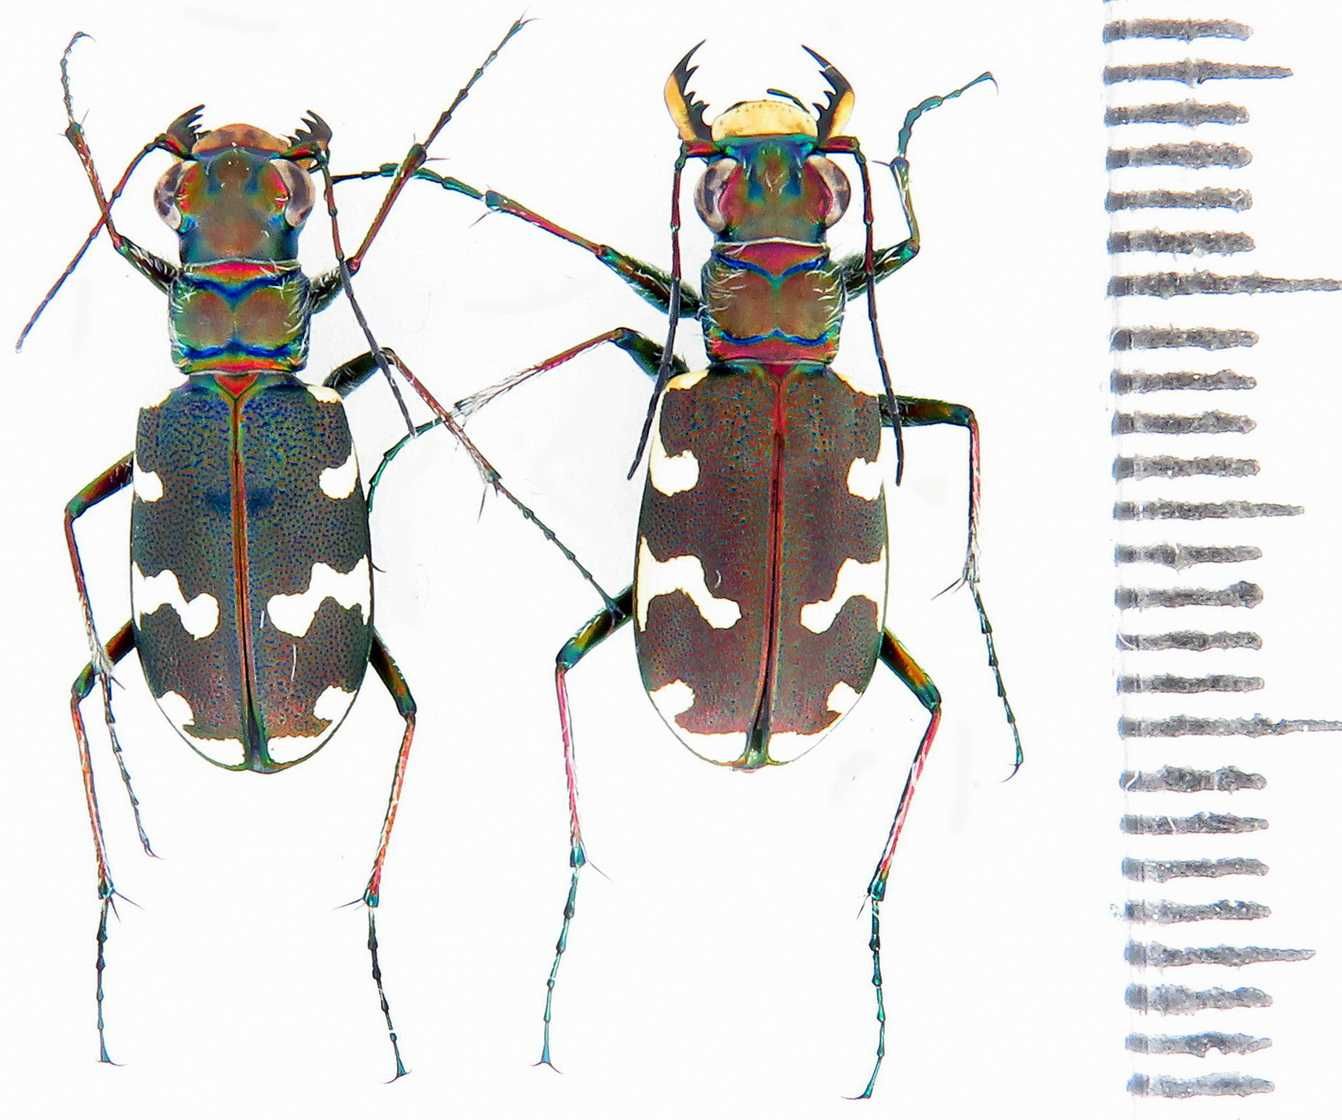 скакун Cicindela коллекция насекомые комахи, жуки, ентомология наука